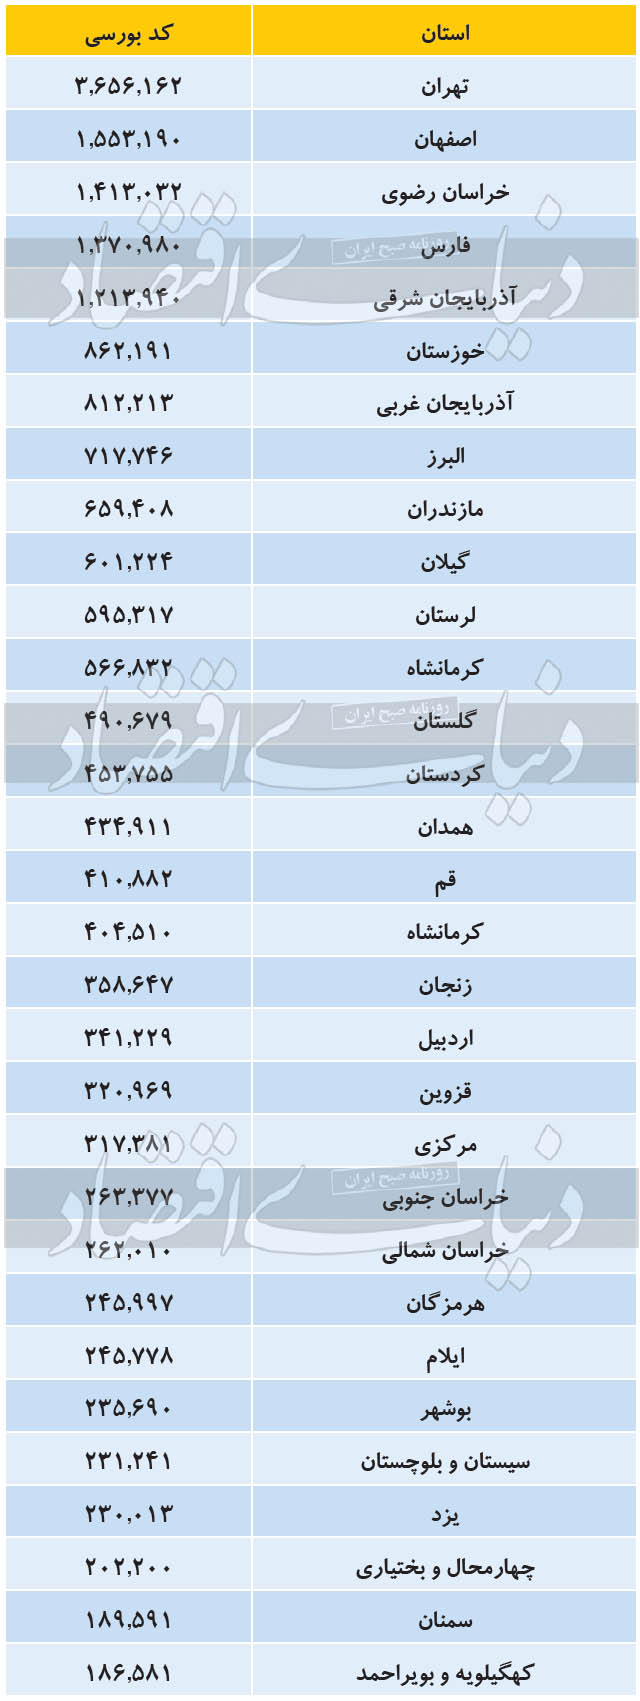 فراوانی استان ها در صدور کد بورسی